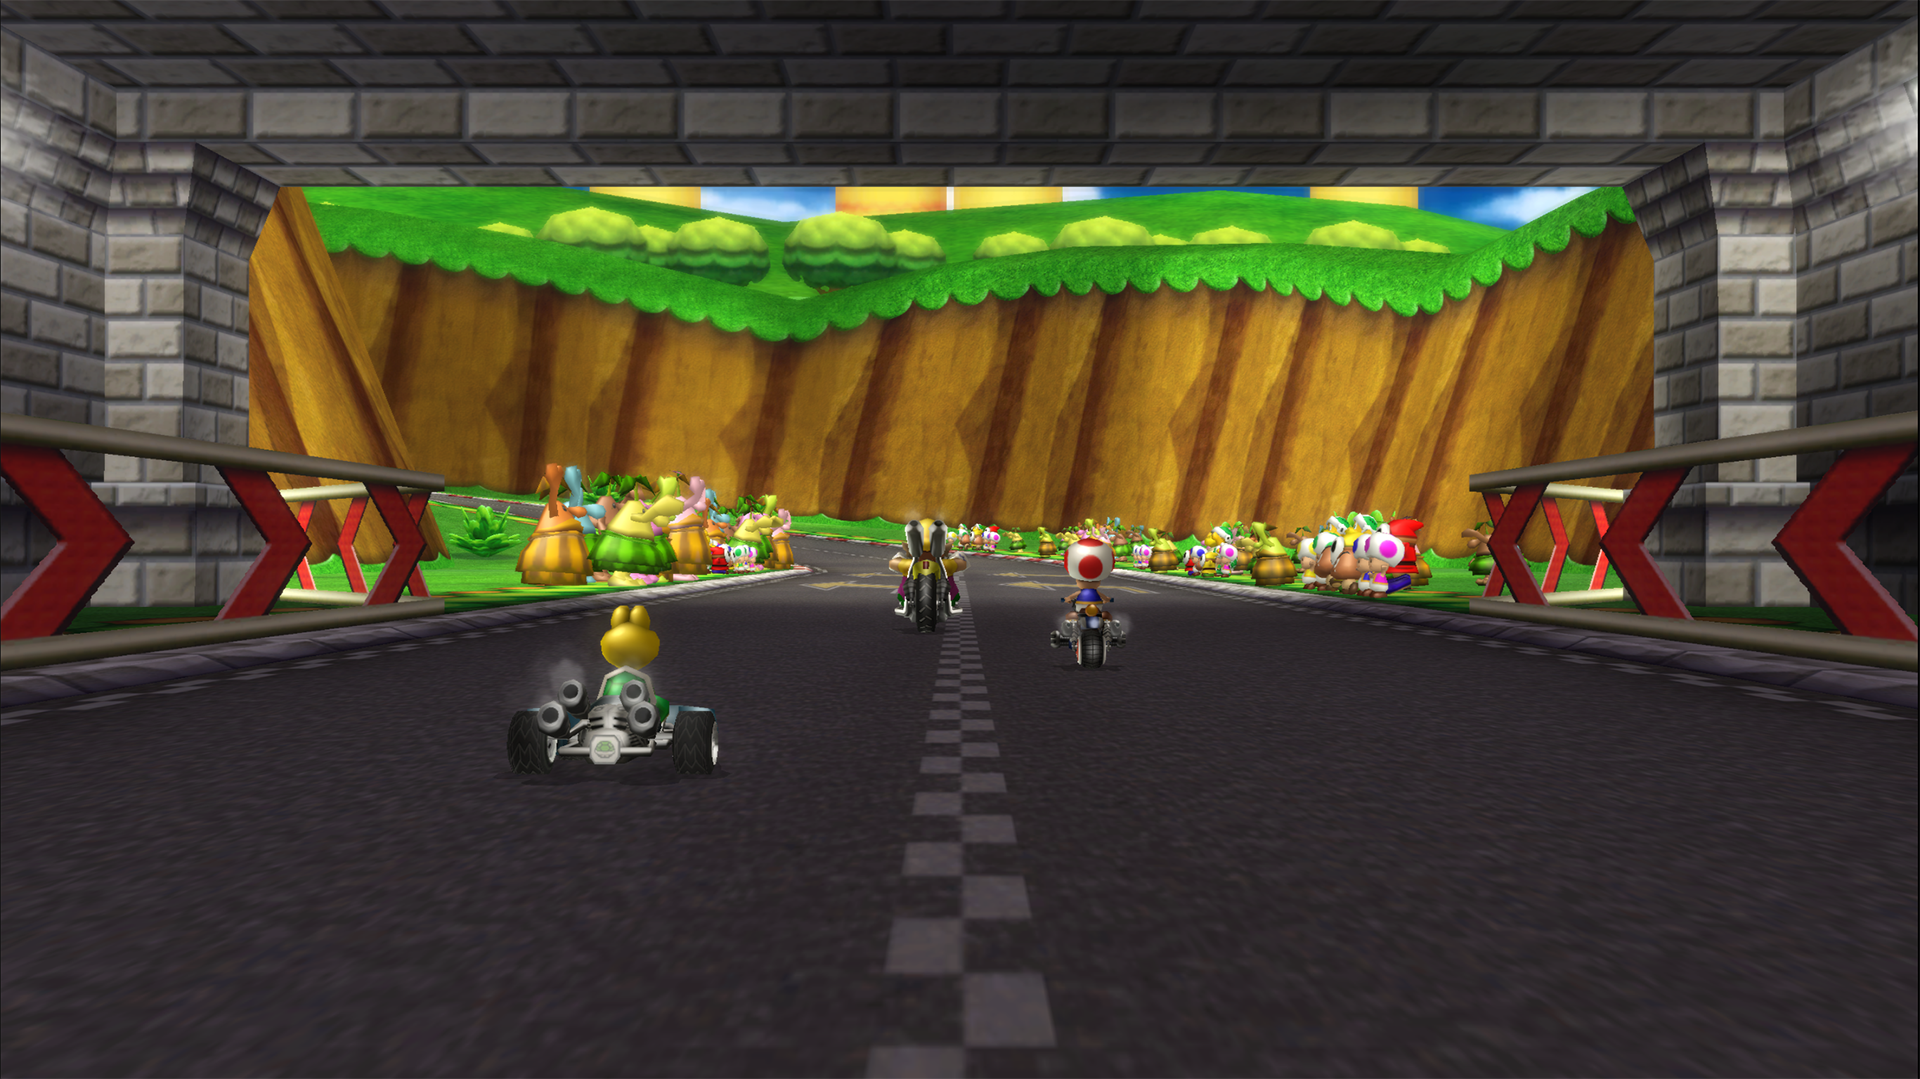 Mario Kart Wii Puter Wallpaper Desktop Background